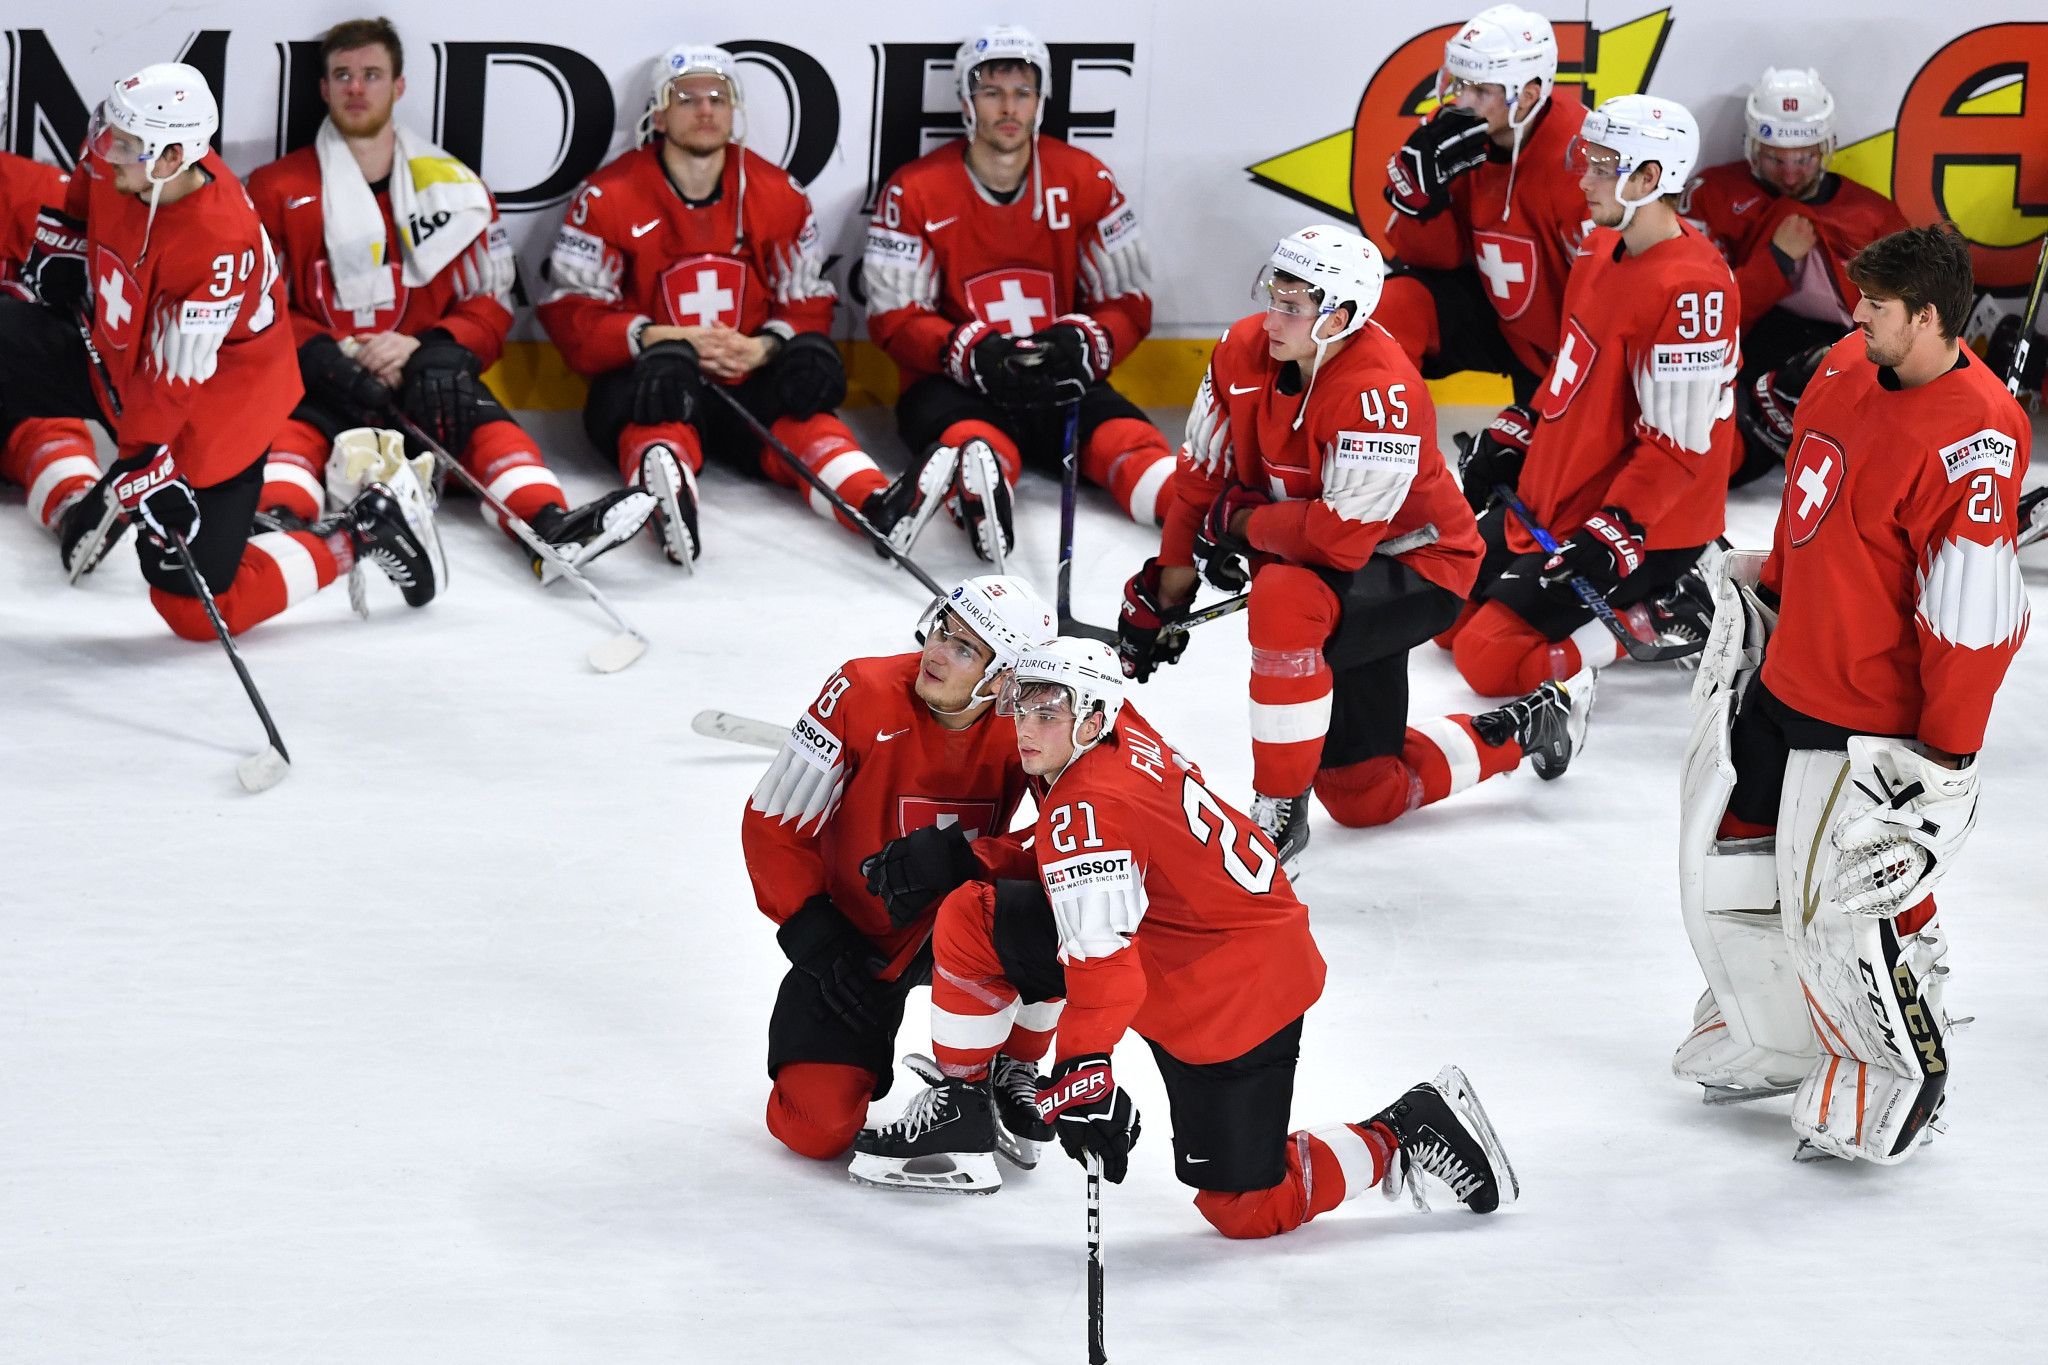 Switzerland were denied a maiden world title ©Getty Images